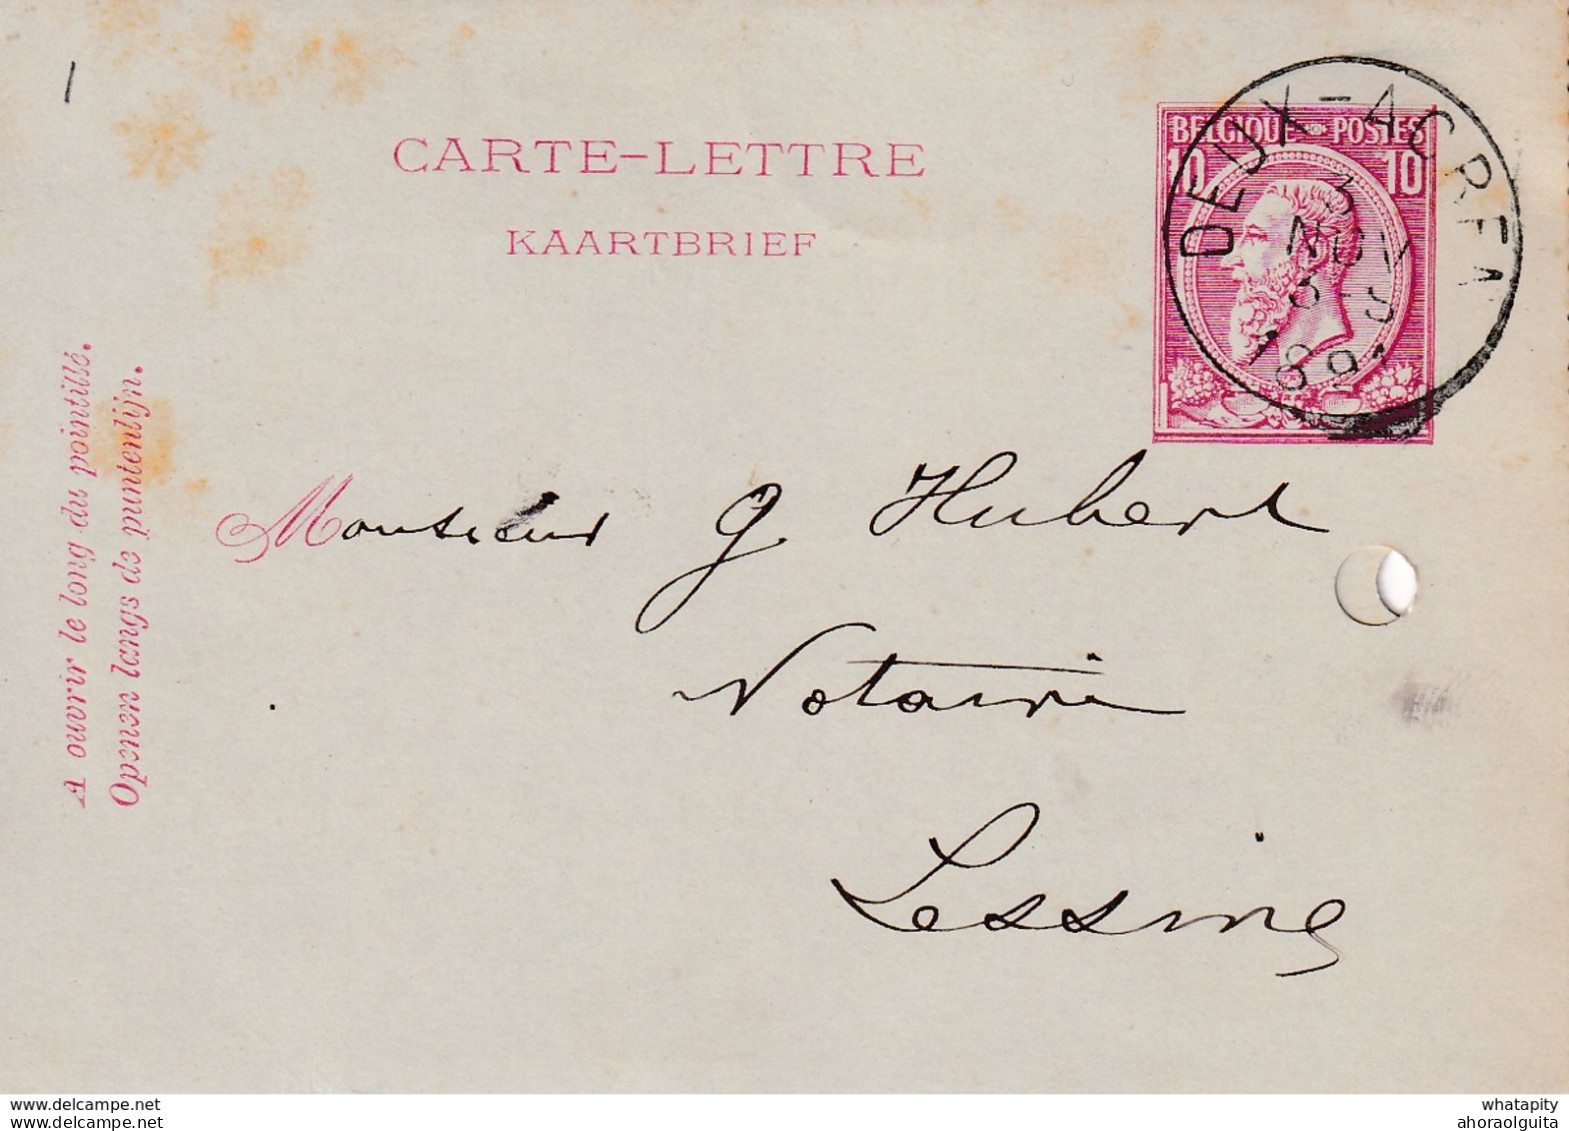 DDW756 - Entier Carte-Lettre Type TP 46 DEUX ACREN 1891 Vers LESSINES - Cartes-lettres